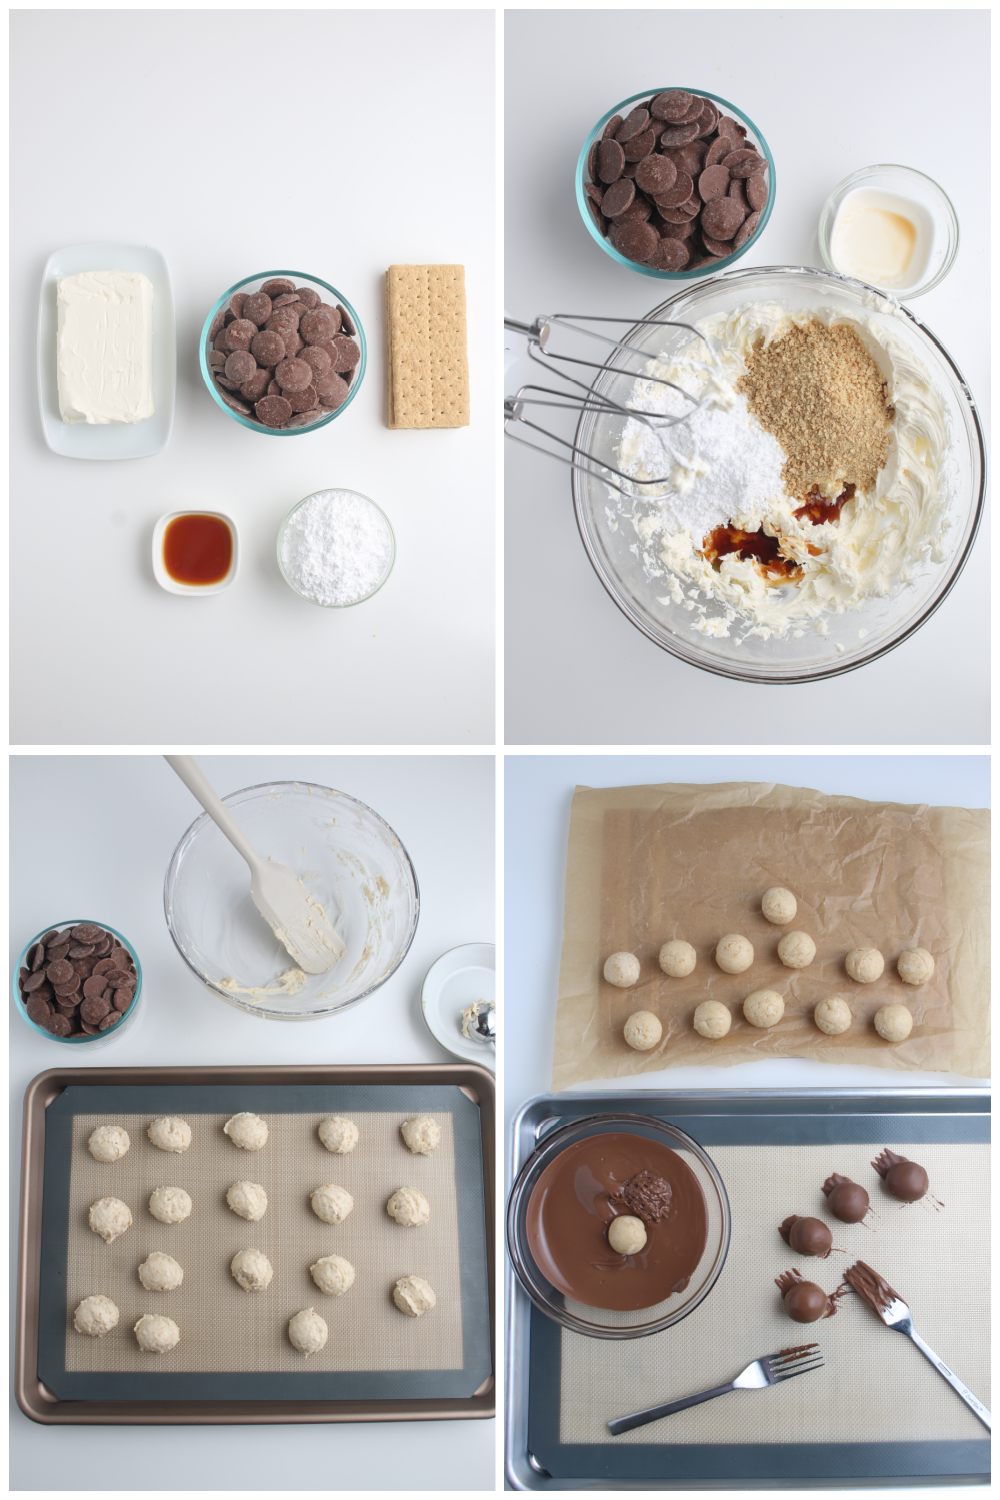 Cheesecake Truffles - Set 2 of 3